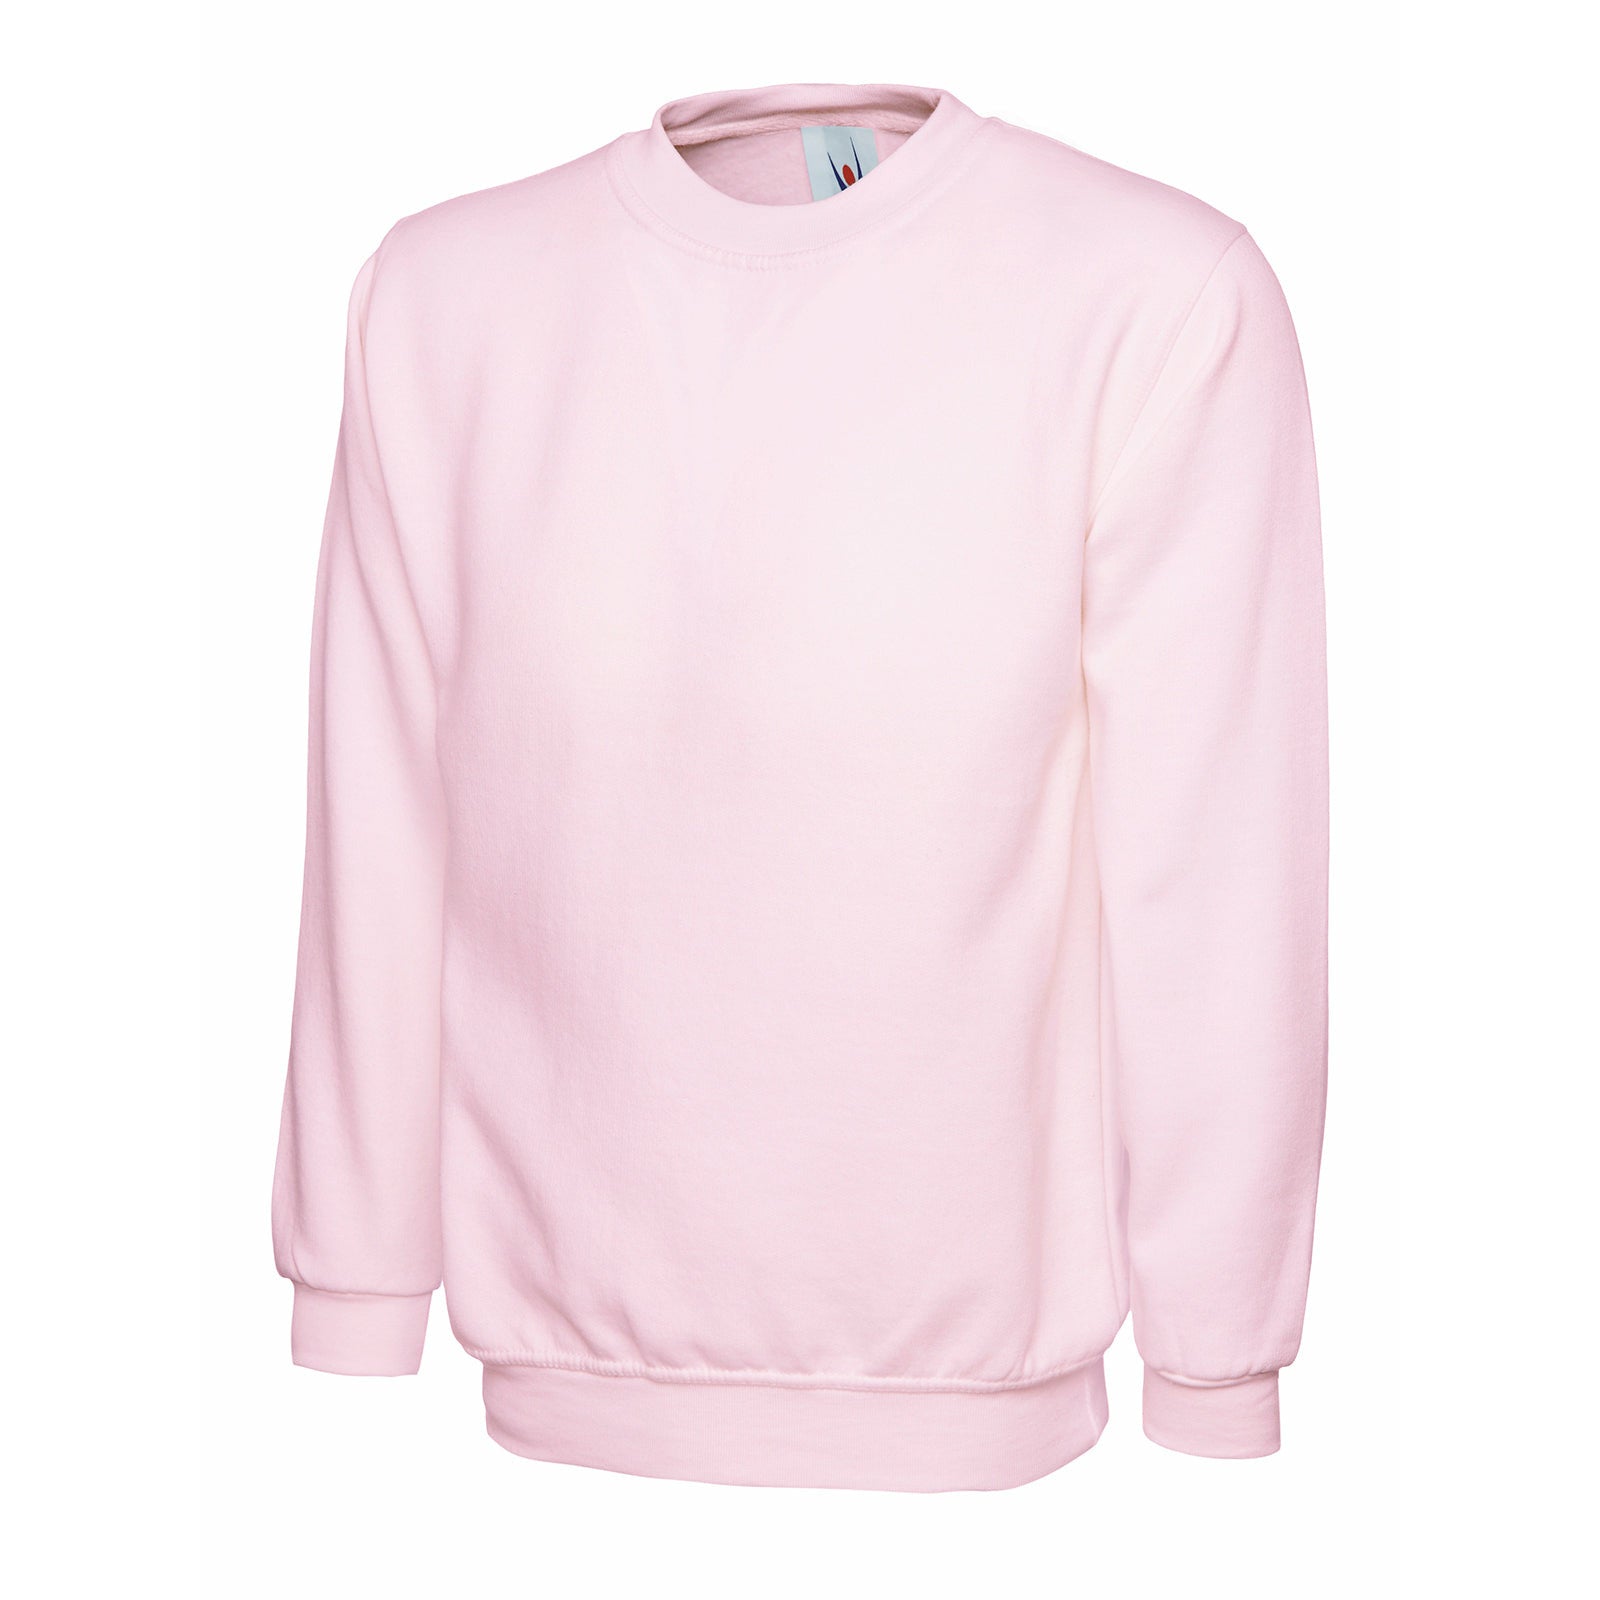 Ladies Deluxe Crew Neck Sweatshirt Pink